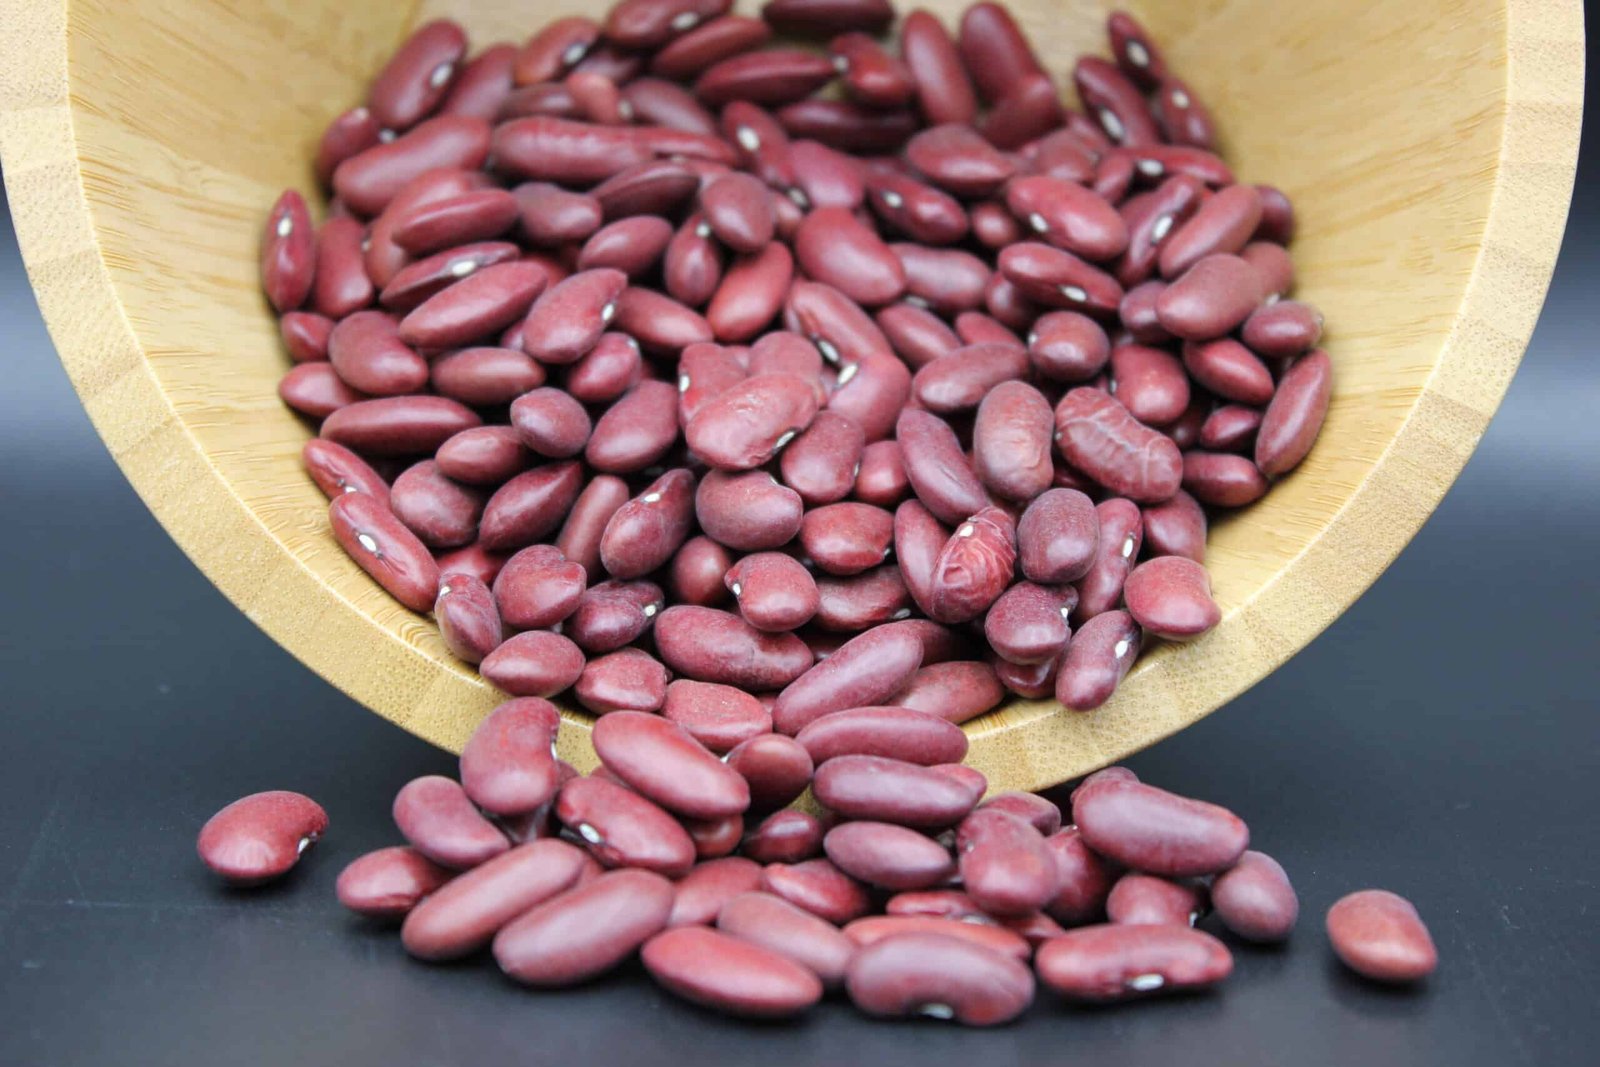 Les dombrés haricots rouge de ma mère 🫘 300 g de haricots rouges 1